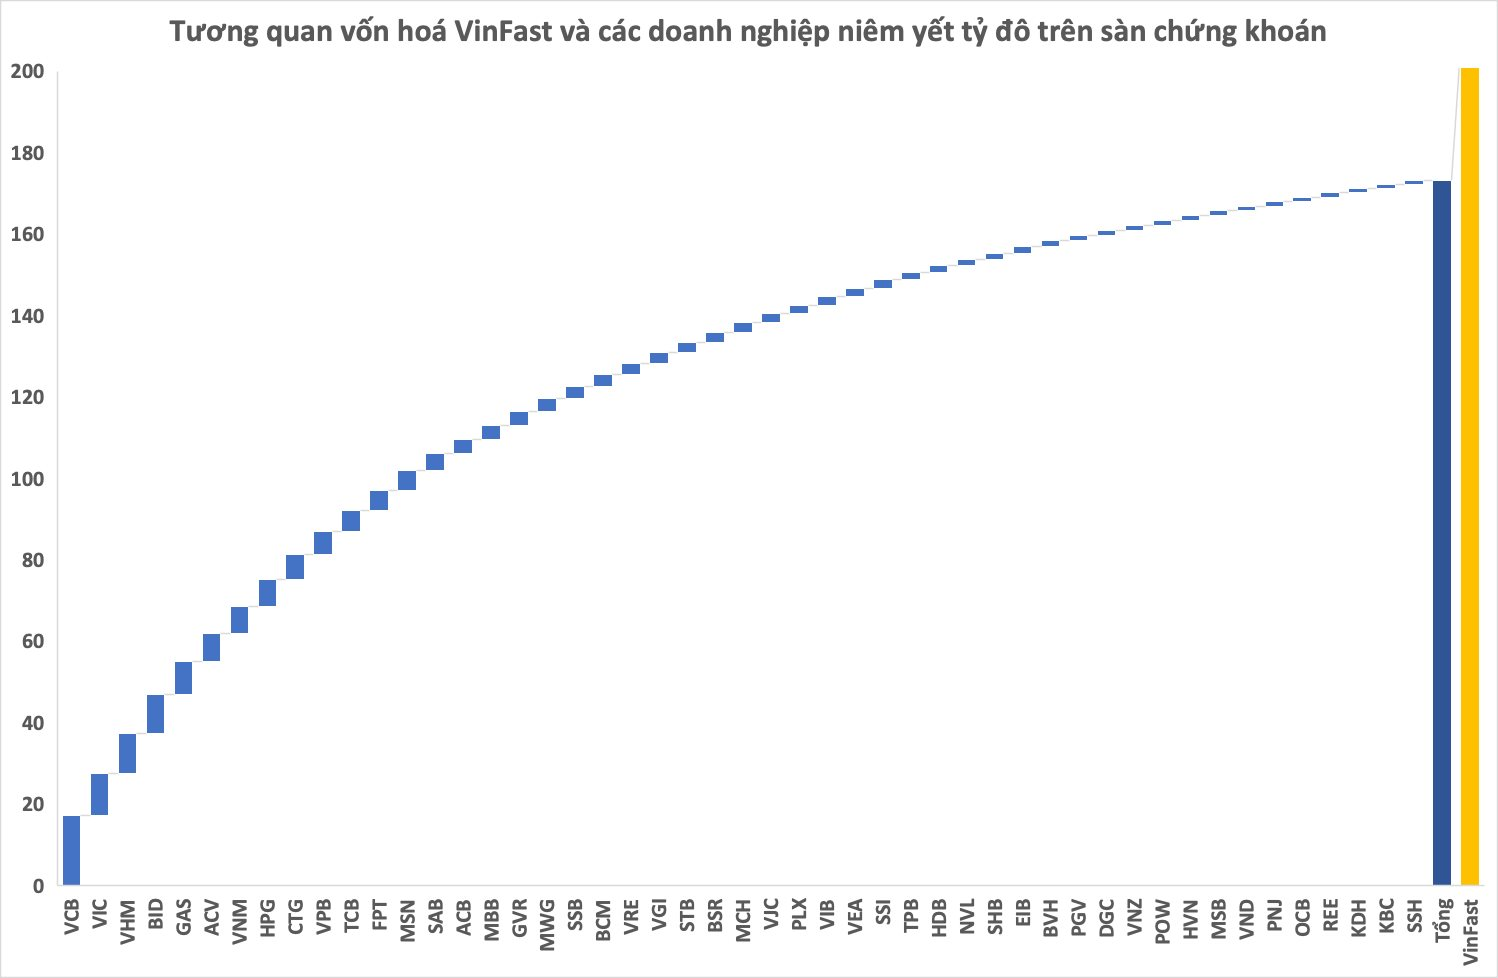 Cổ phiếu VinFast có thời điểm sát mốc 90 USD trong phiên 28/8, vốn hóa vượt tổng giá trị toàn bộ doanh nghiệp "tỷ đô" trên sàn chứng khoán Việt Nam - Ảnh 2.